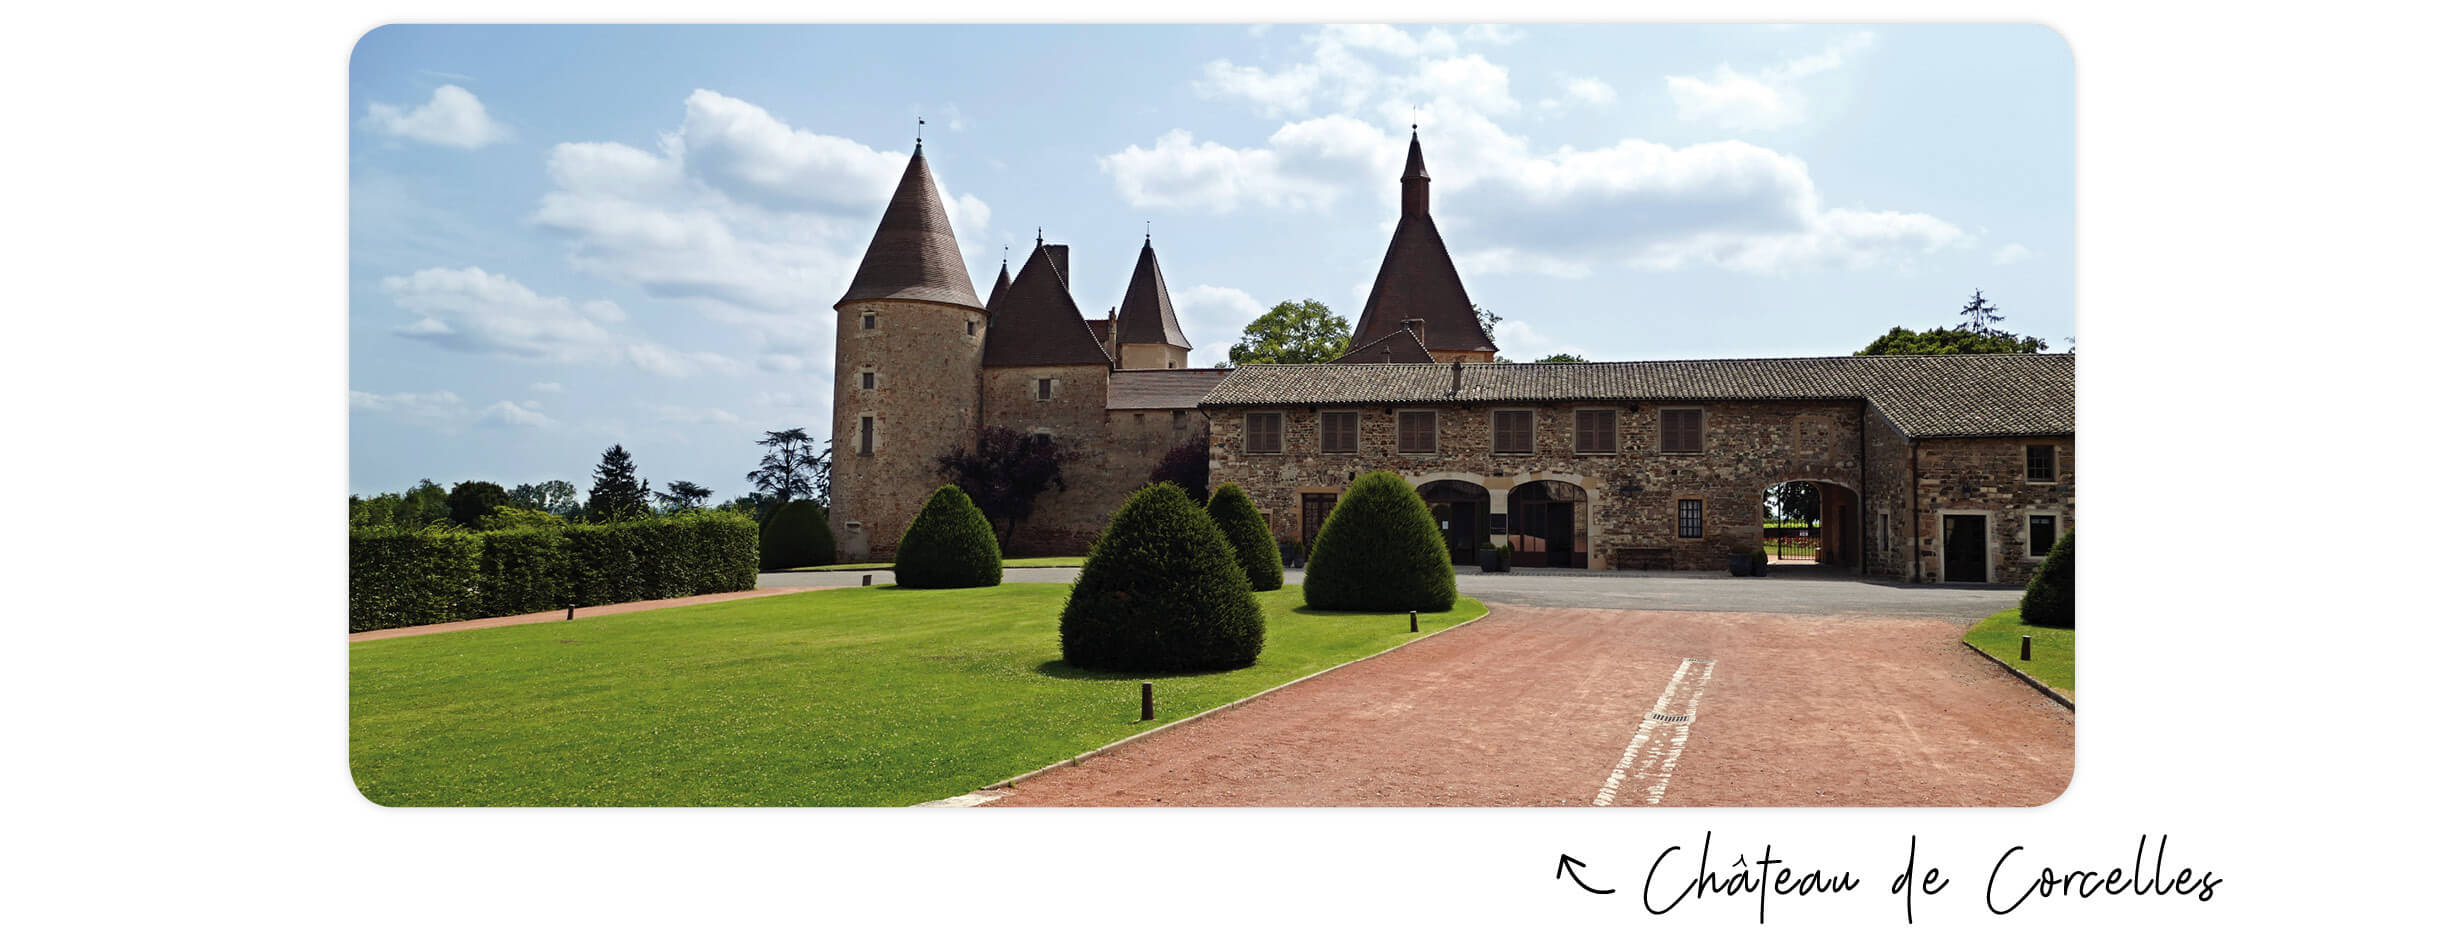 Bienvenue en Beaujonomie. Présentation du concept au château de Corcelles.